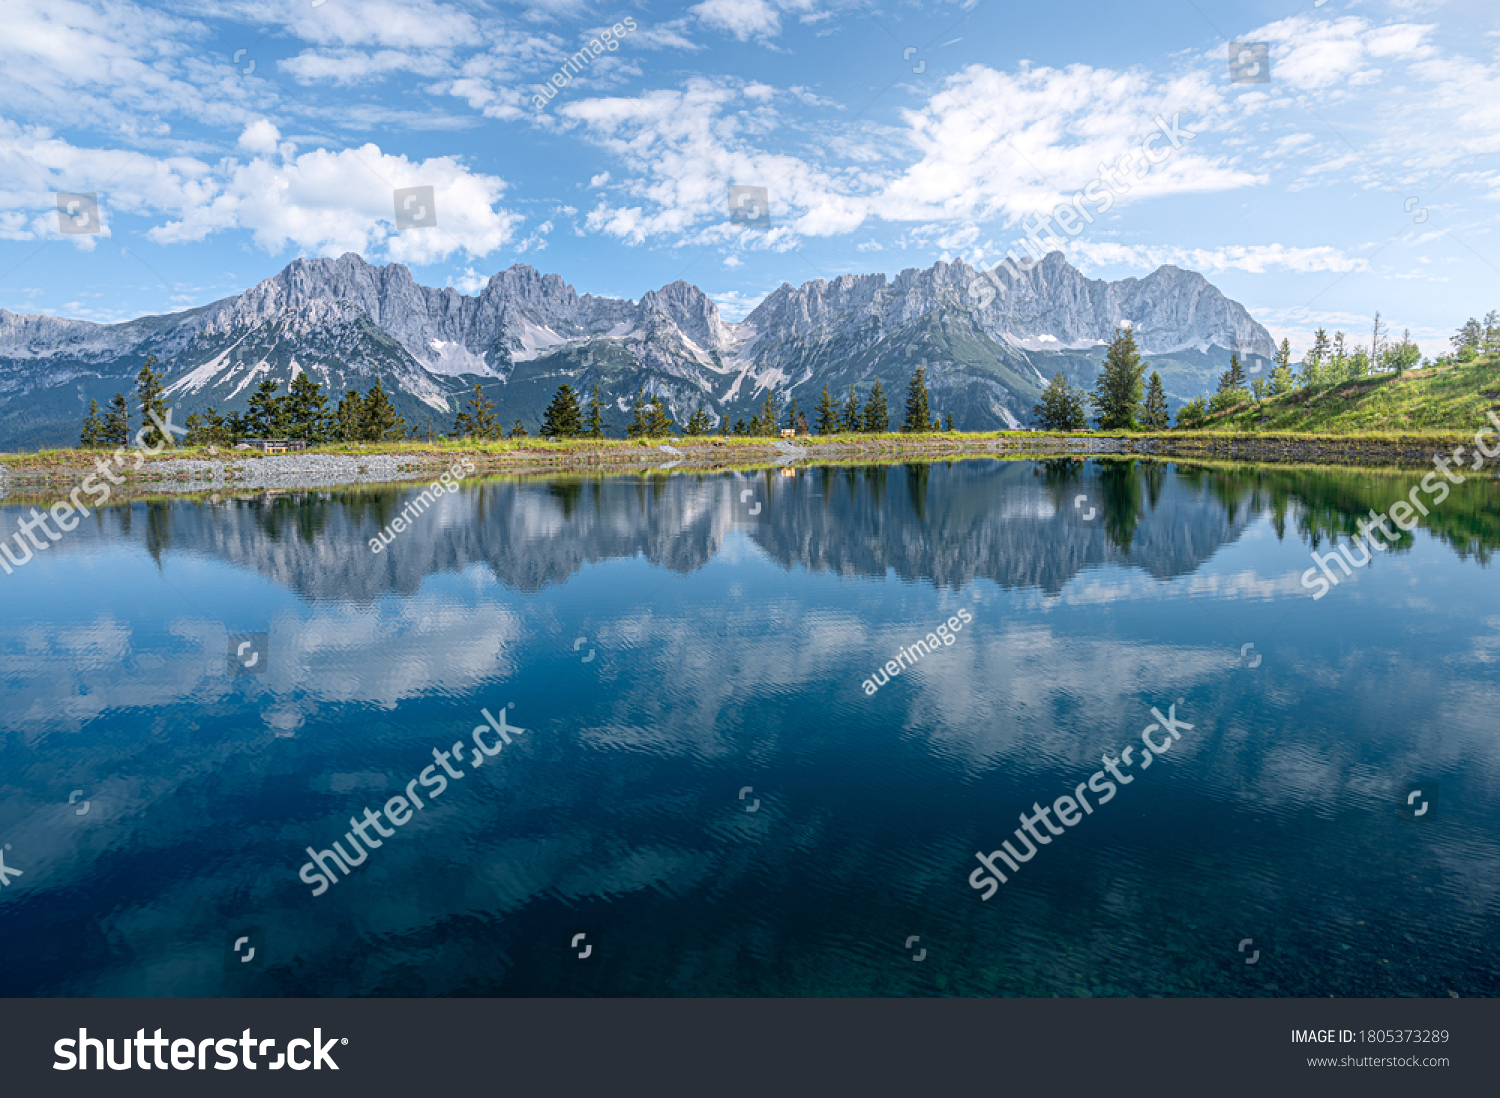 Mountain lake in the Kitzbühel Alps, Austria #1805373289